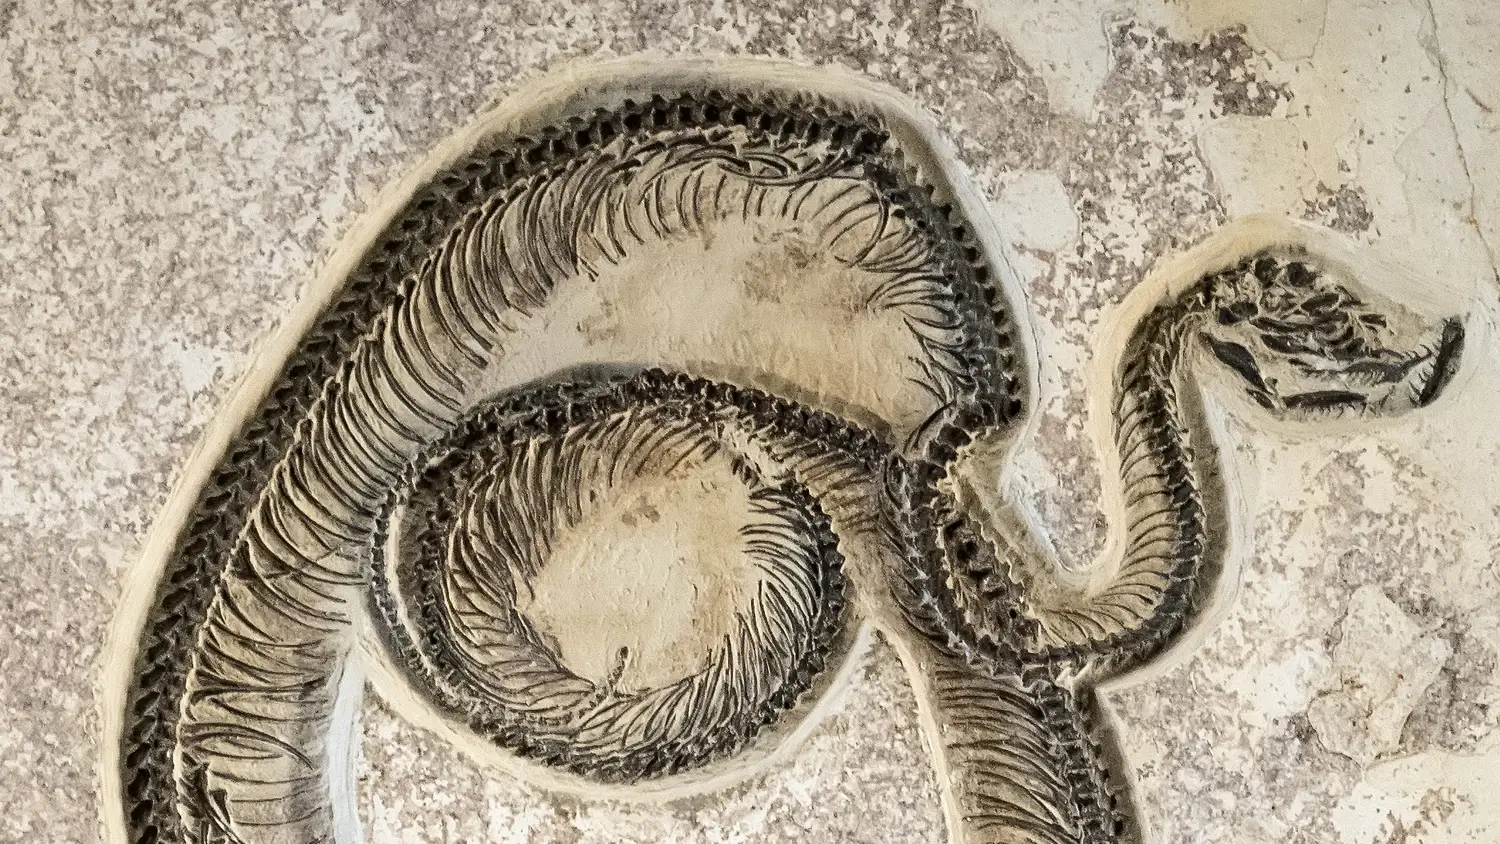 Ископаемая змея из эоцена в скале